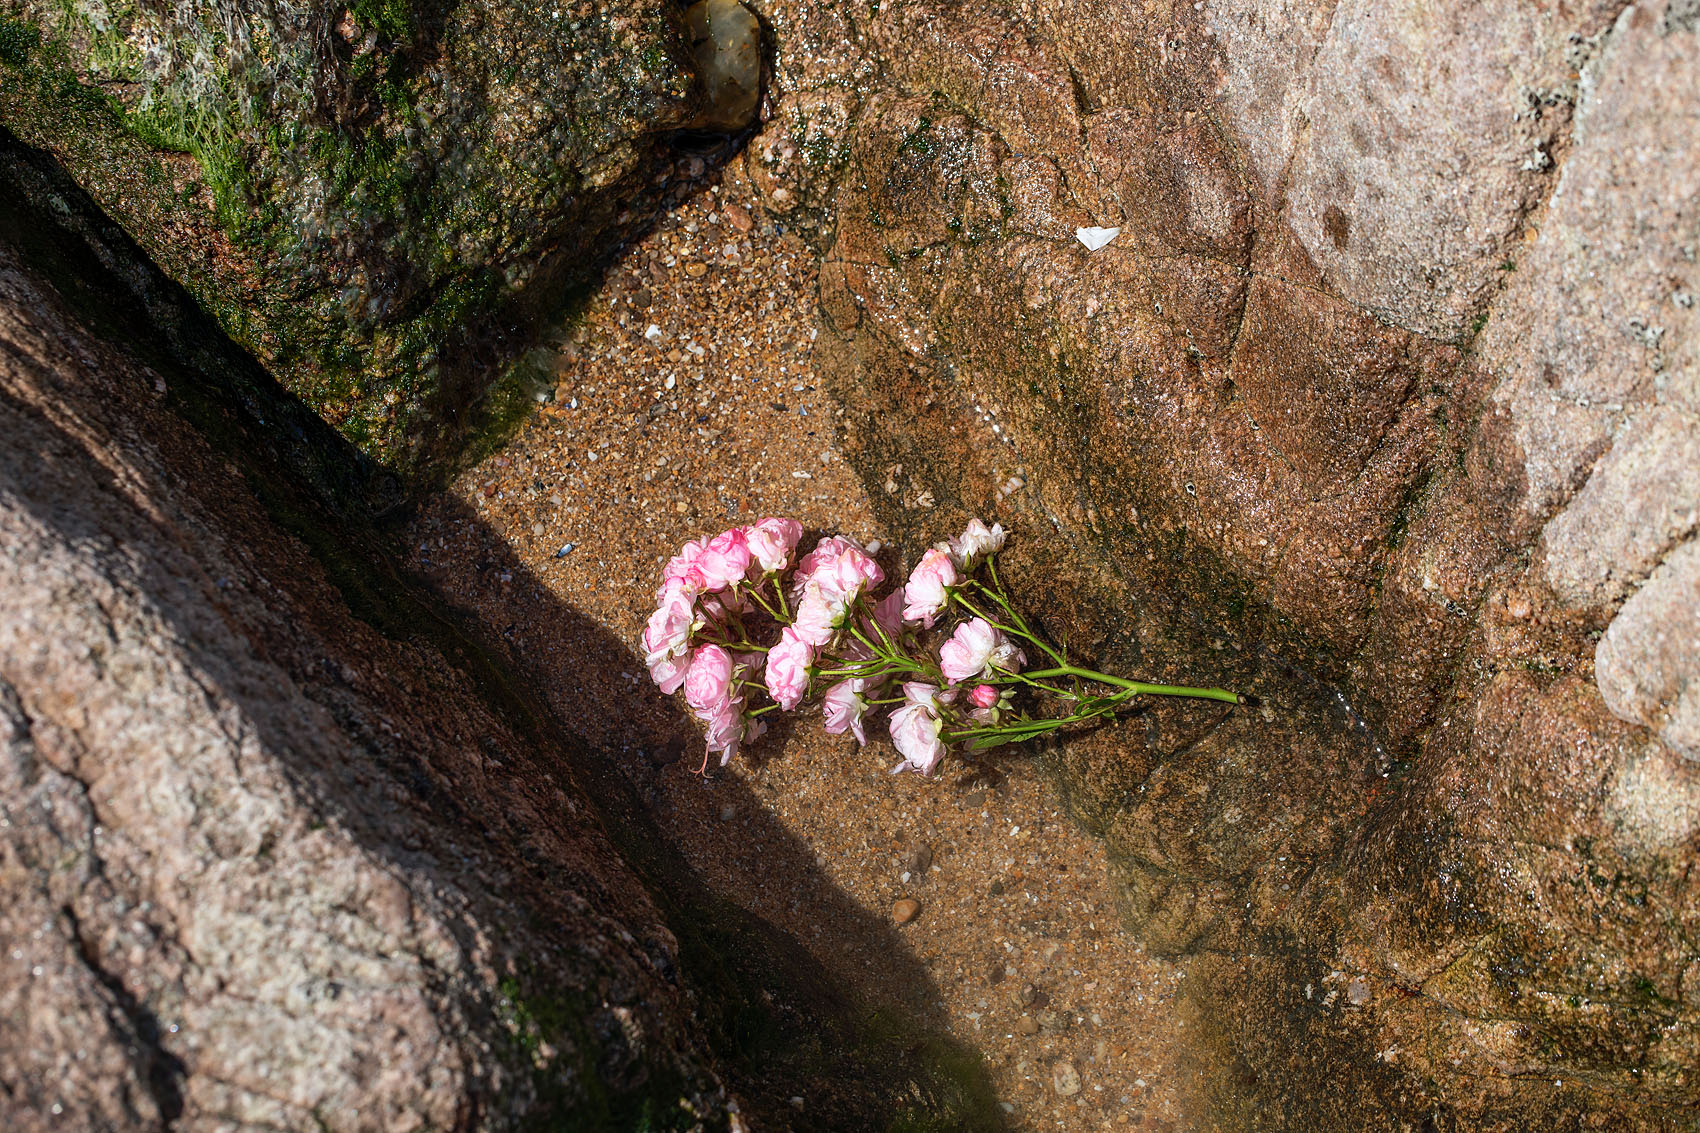 Les Sables d’Olonne, le 10 juin 2019. Les sablais sont venus déposer des fleurs sur le site du naufrage.